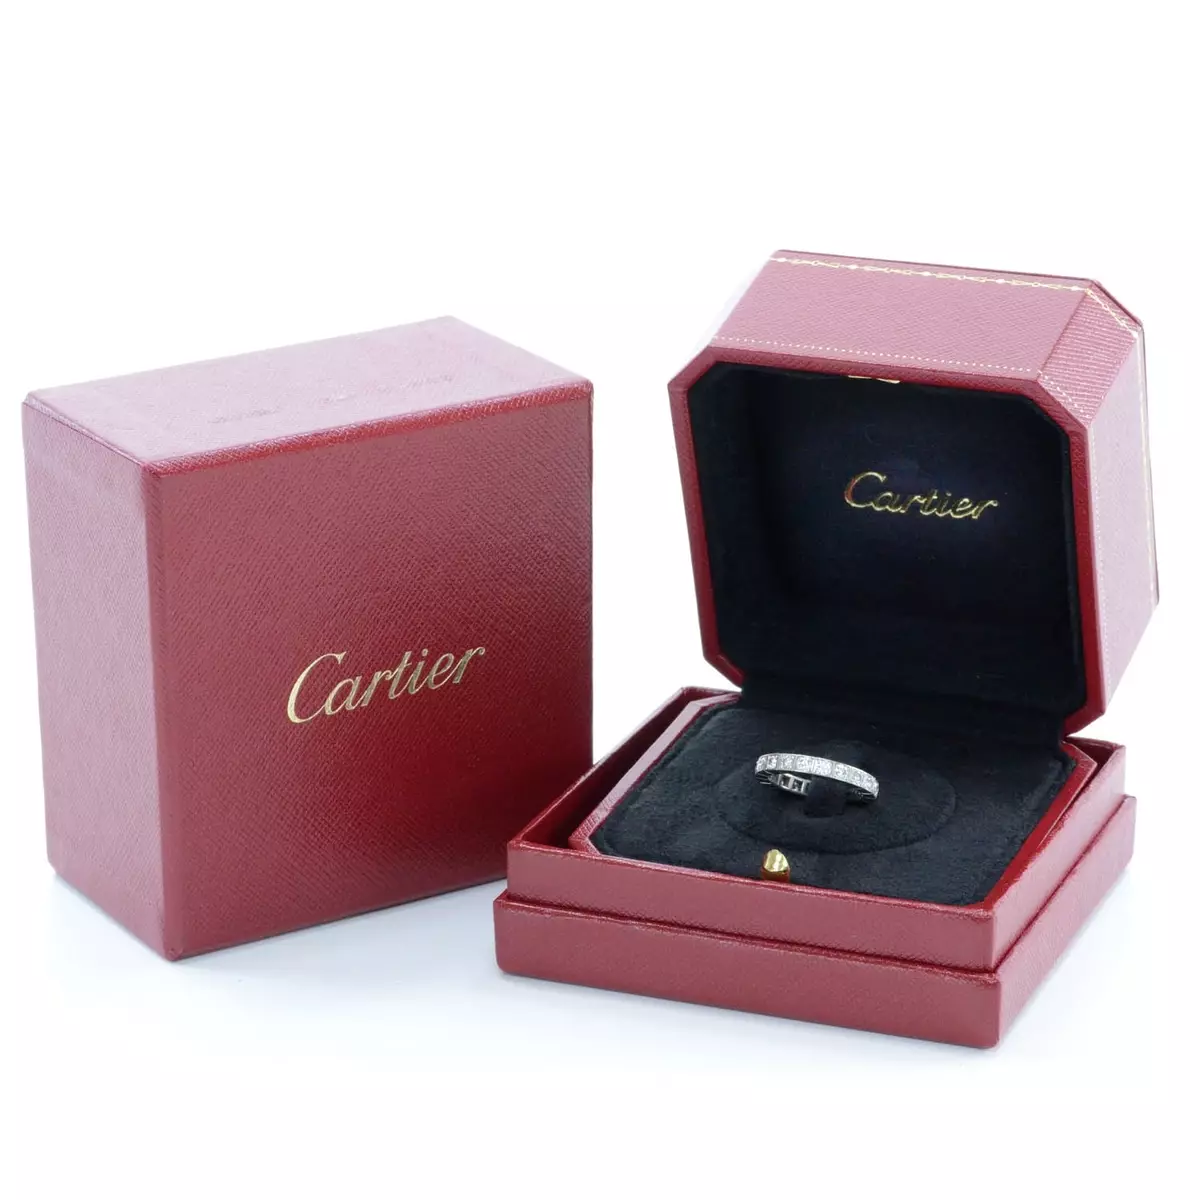 ሪንግ Cartier (115 ፎቶዎች): ታዋቂ ሥላሴ ሞዴሎች, የጥፍር, ፍቅር, ዋጋ የጌጣጌጥ ታሪክ እና ክለሳ 3102_78